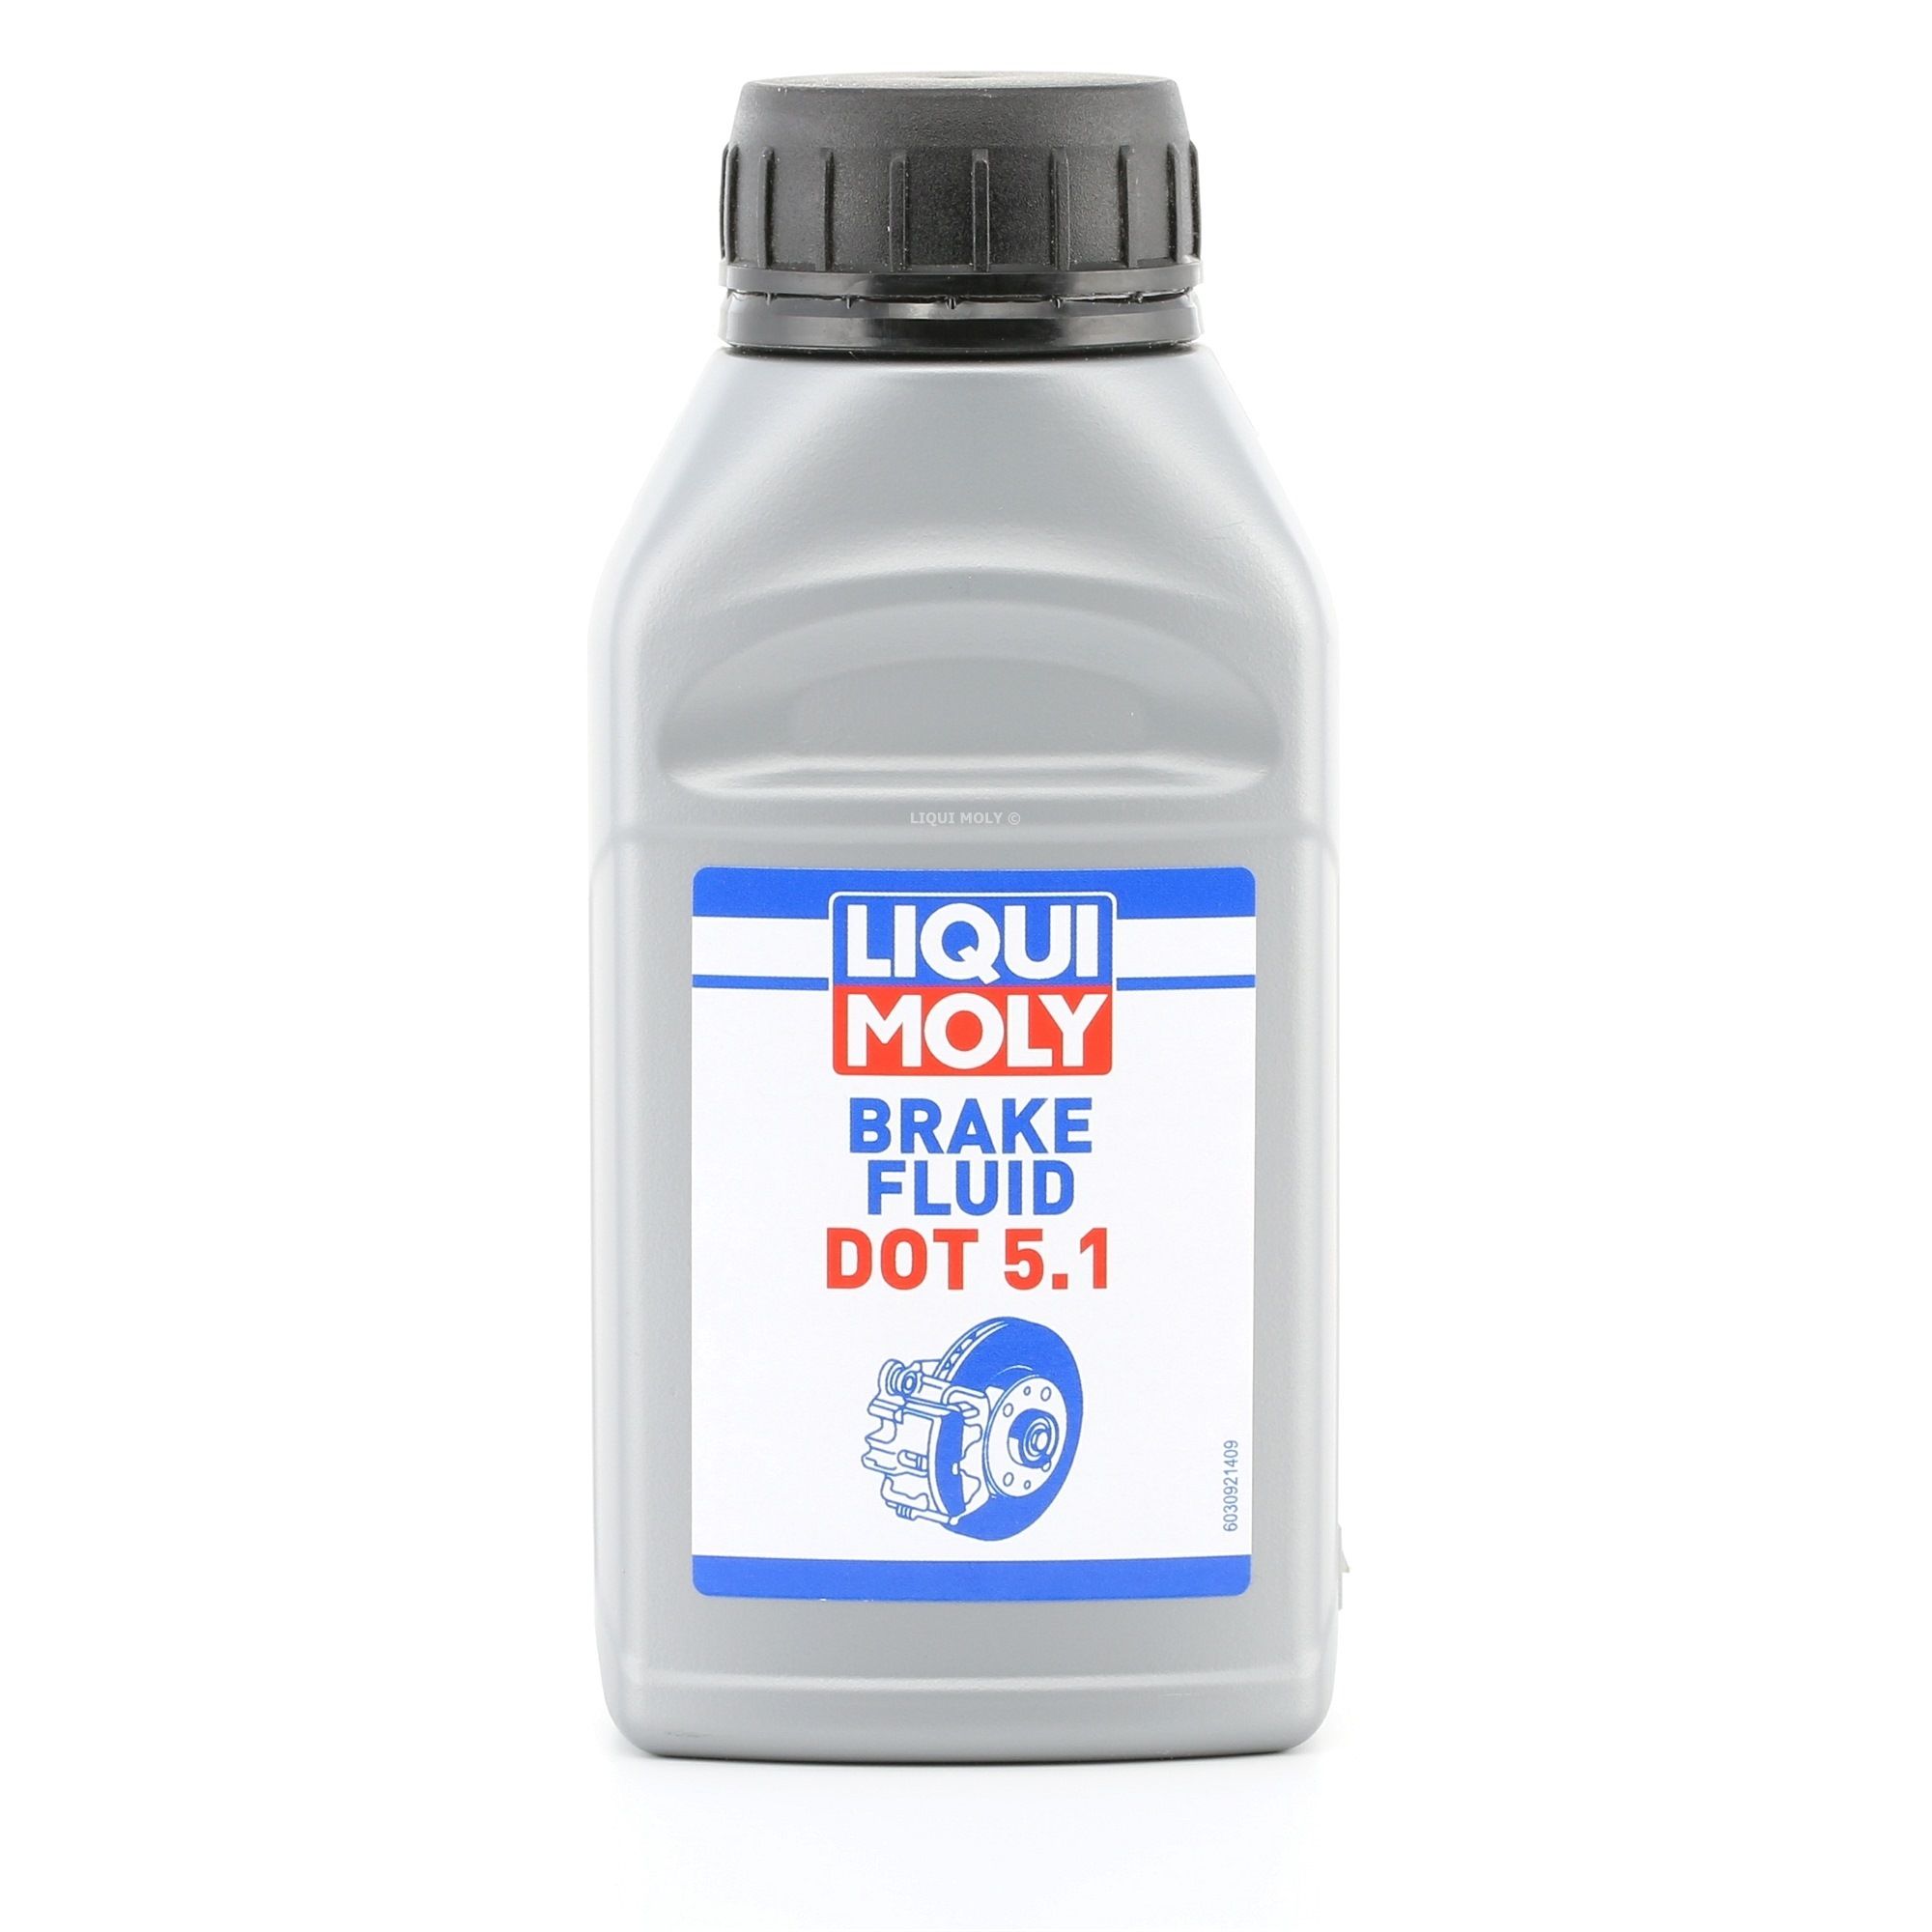 LIQUI MOLY Liquide De Frein Brake Fluid DOT 5.1 3092 Huile De Frein DAEWOO,BMW,FIAT,MATIZ KLYA,KALOS